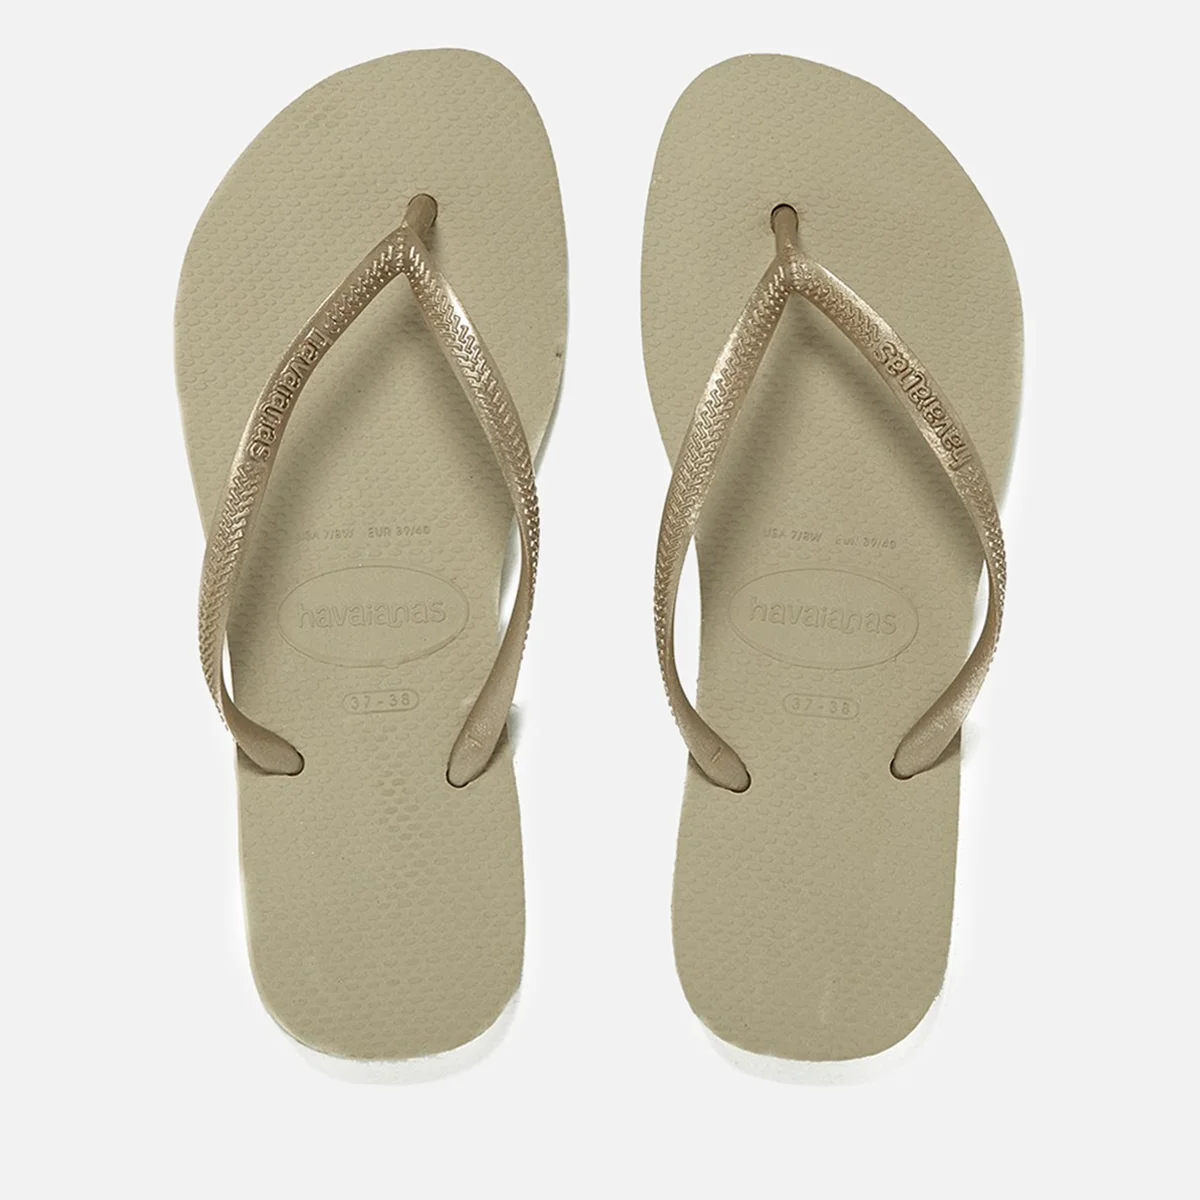 Havaianass Girls' Slim Flip Flops - Sand Grey/Light Golden Image 1